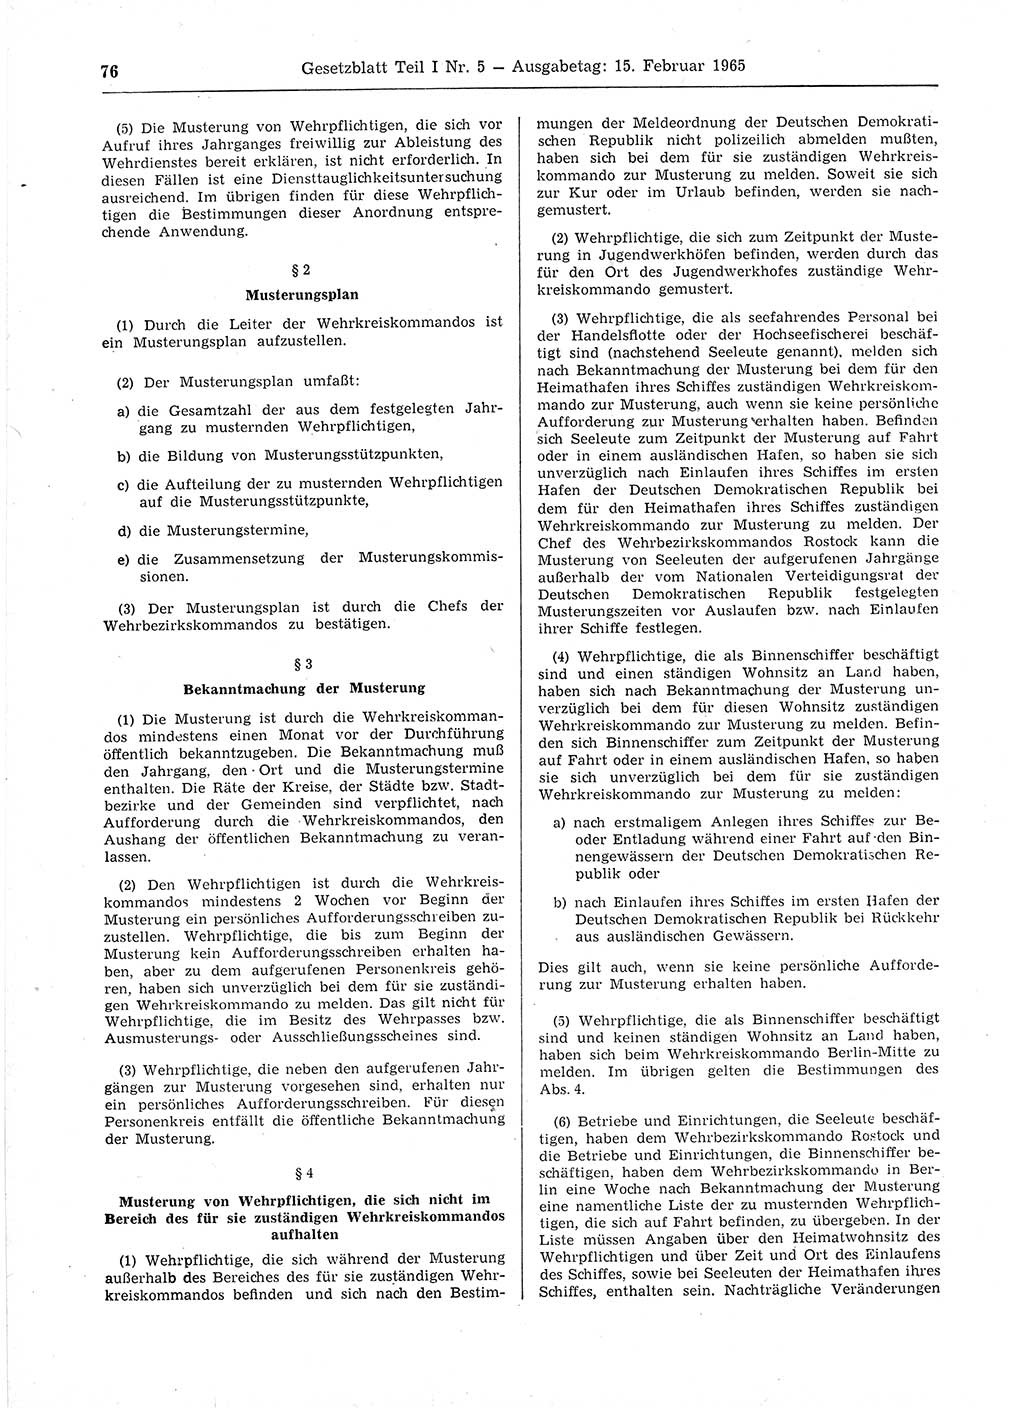 Gesetzblatt (GBl.) der Deutschen Demokratischen Republik (DDR) Teil Ⅰ 1965, Seite 76 (GBl. DDR Ⅰ 1965, S. 76)